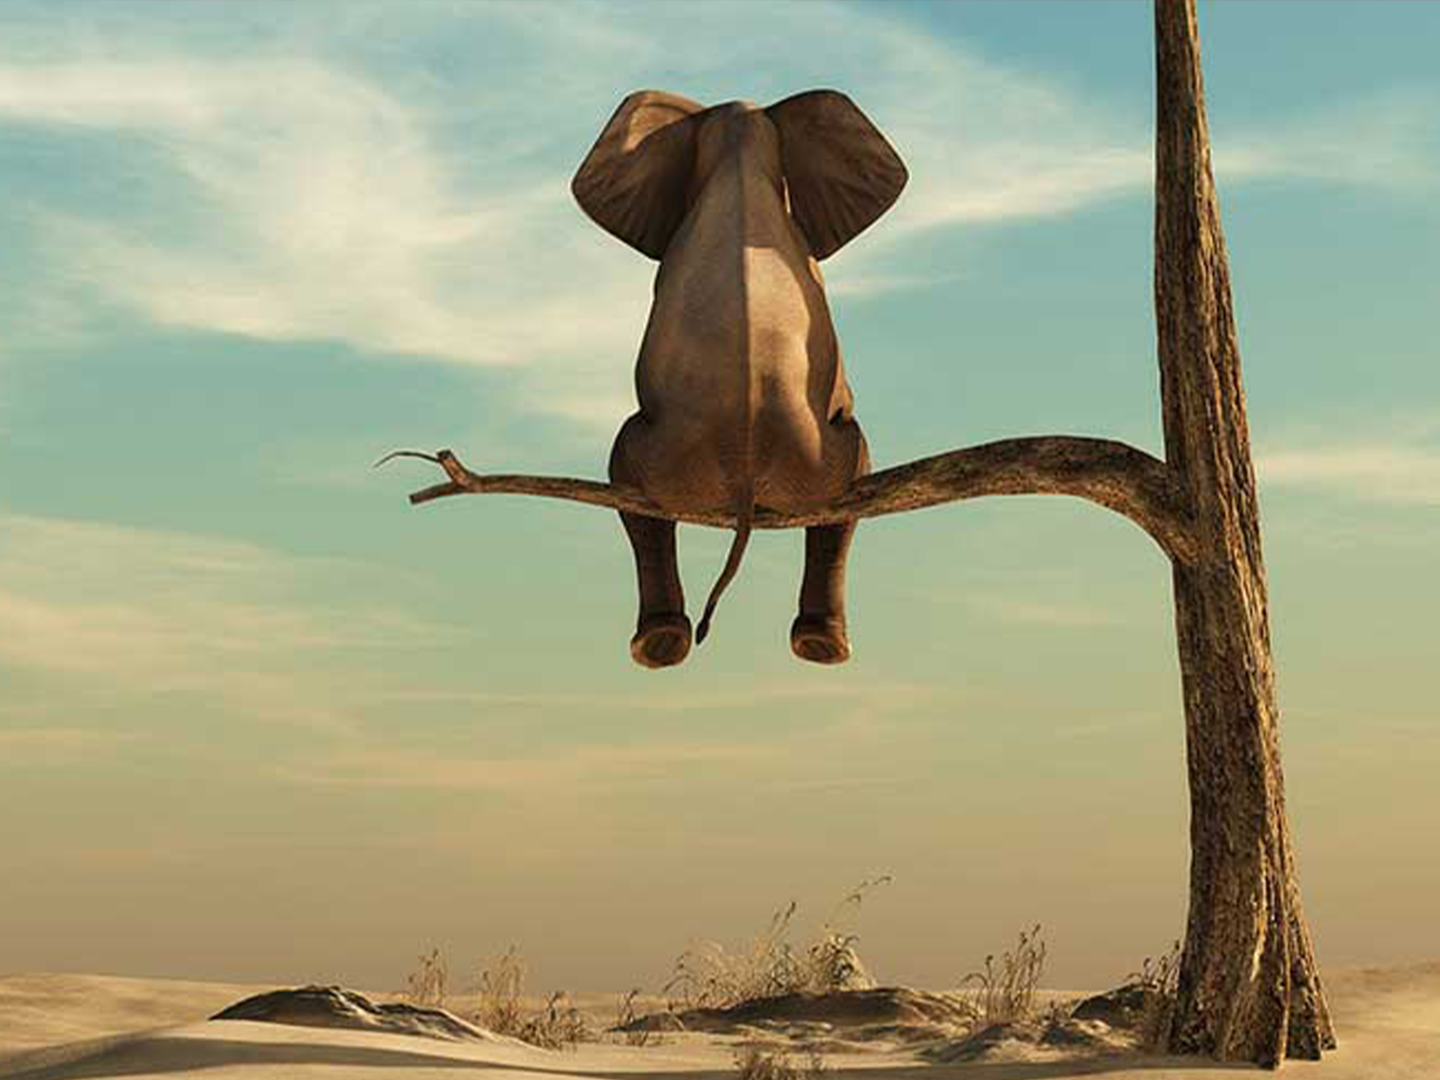 Elefant sitzt auf einem Baum in der Wüste